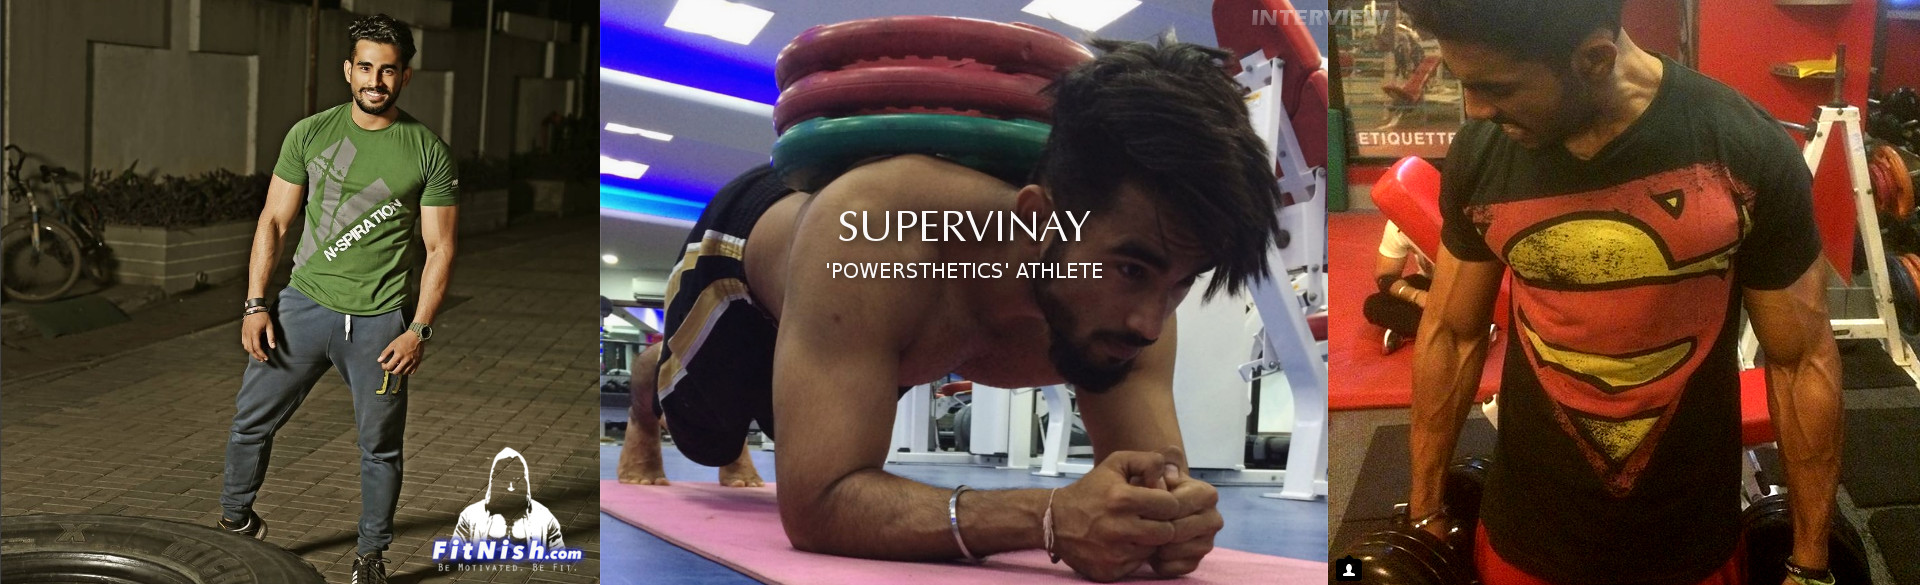 With Indian Powerlifting + Calisthenics "Powersthenics" Athlete, SuperVinay